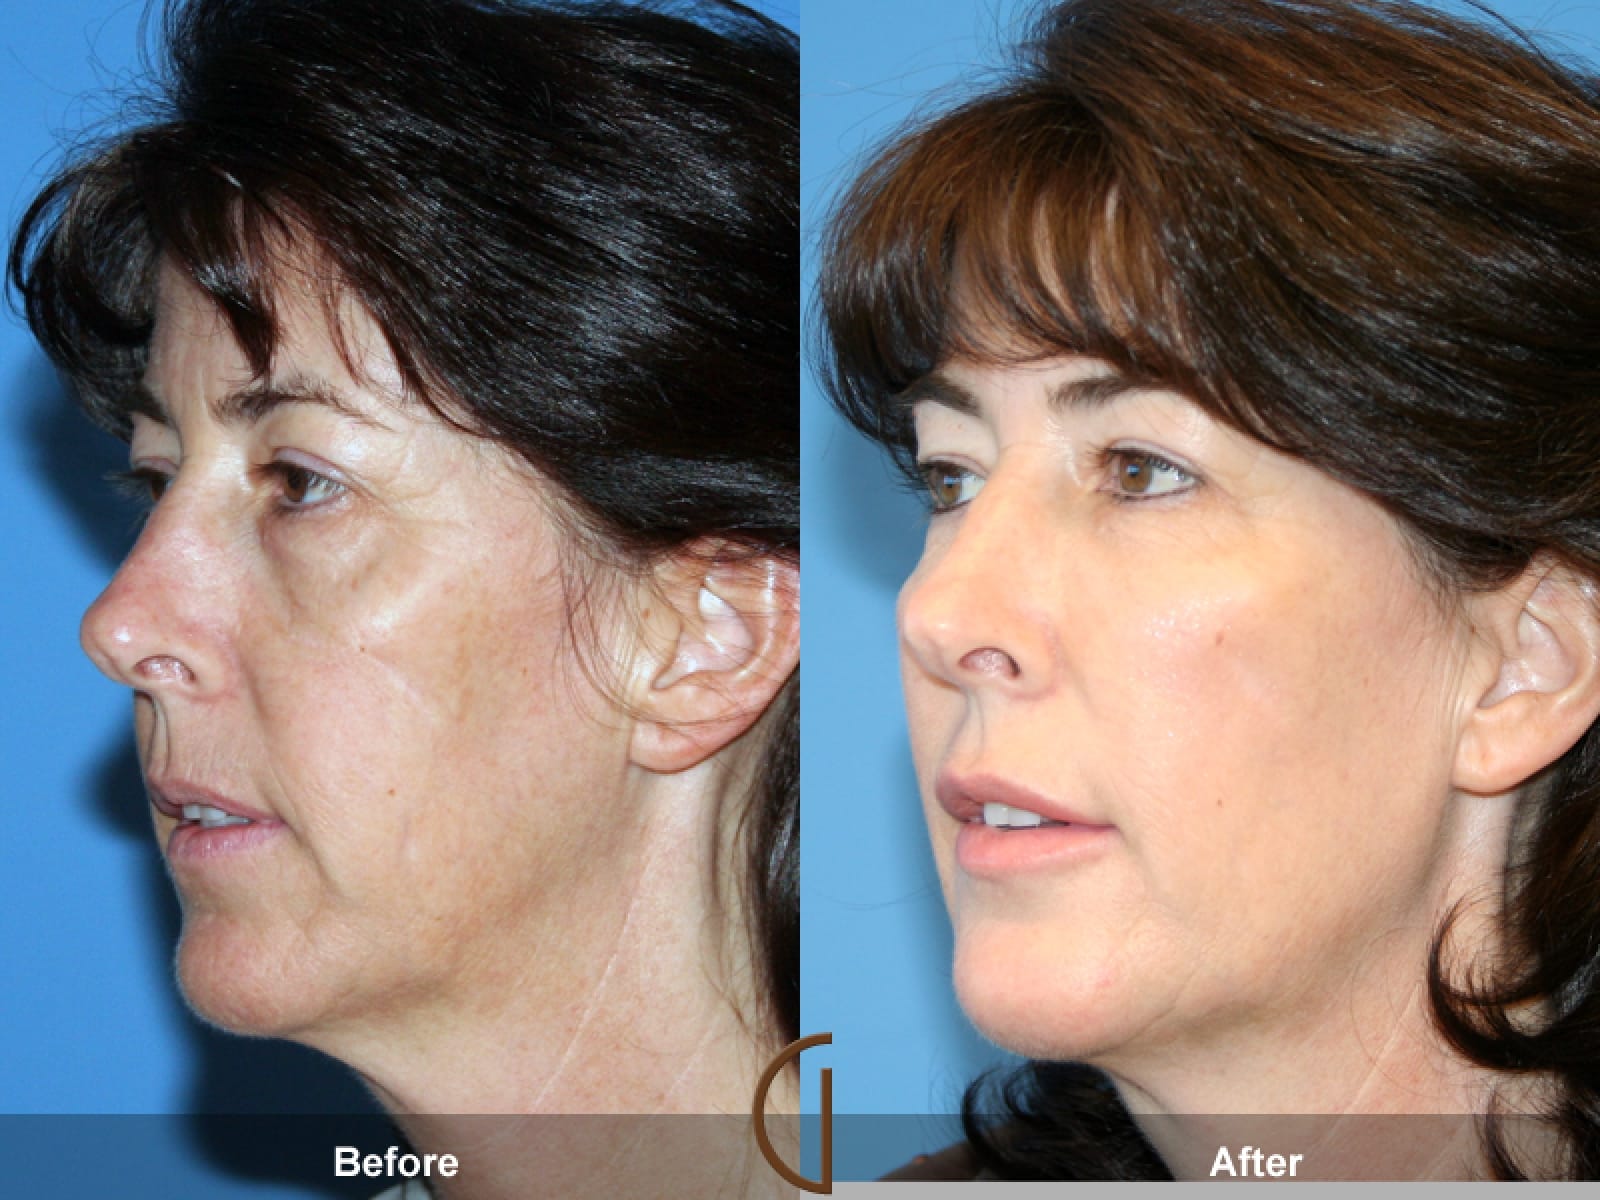 Плазмолифтинг отзывы фото до и после лицо. Плазмолифтинг для лица. Плазмолифтинг лица до и после эффект. Плазмотерапия лица фото до и после. Плазмолифтинг для лица до и после фото.